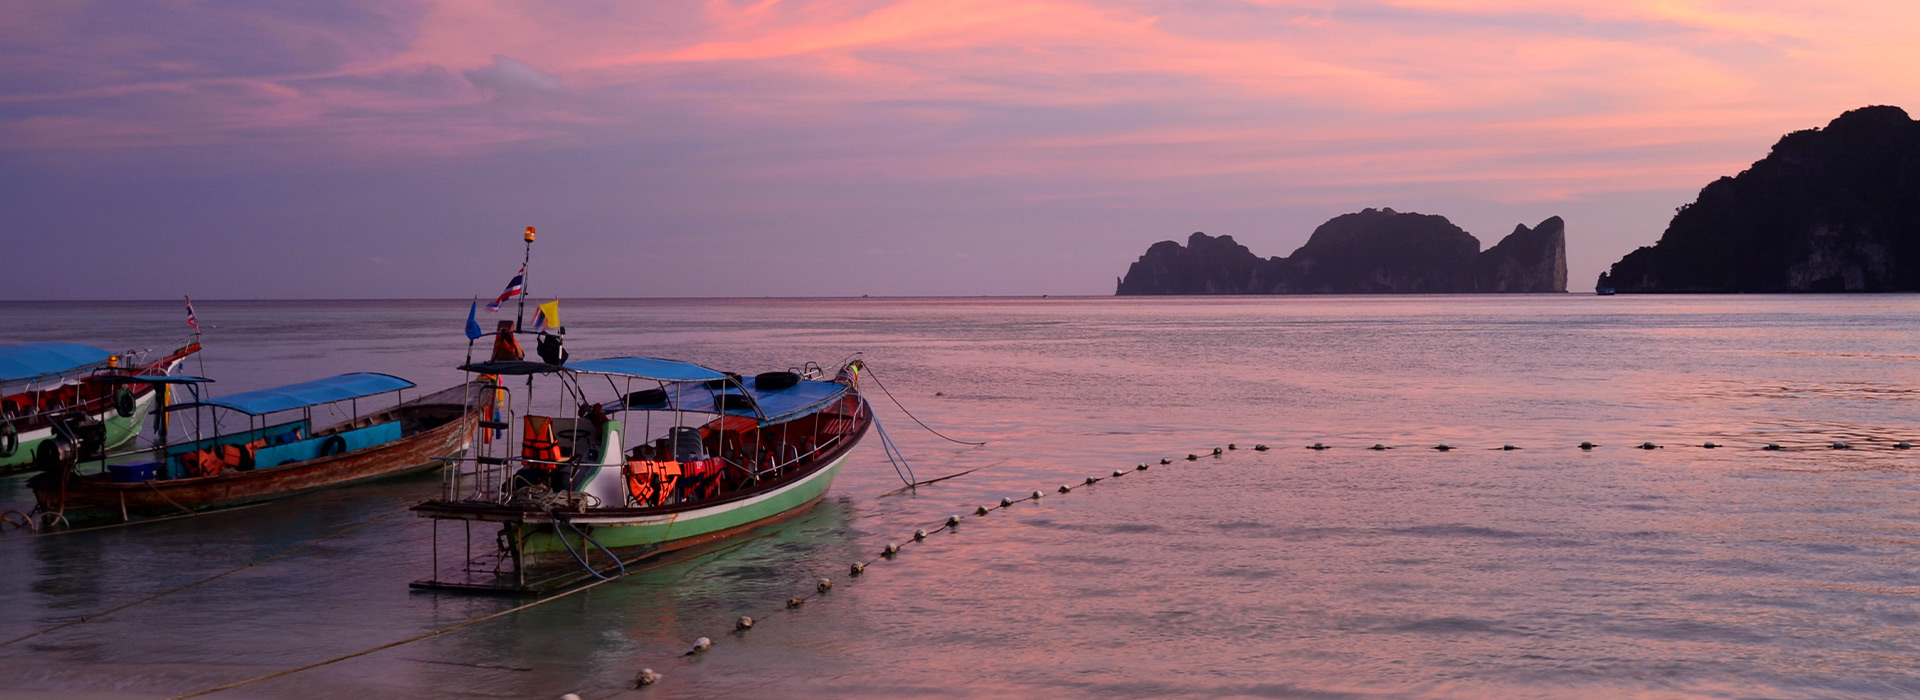 Reisen nach Thailand - Individuelle Reisen nach Thailand - Harry Kolb AG - Tourismus